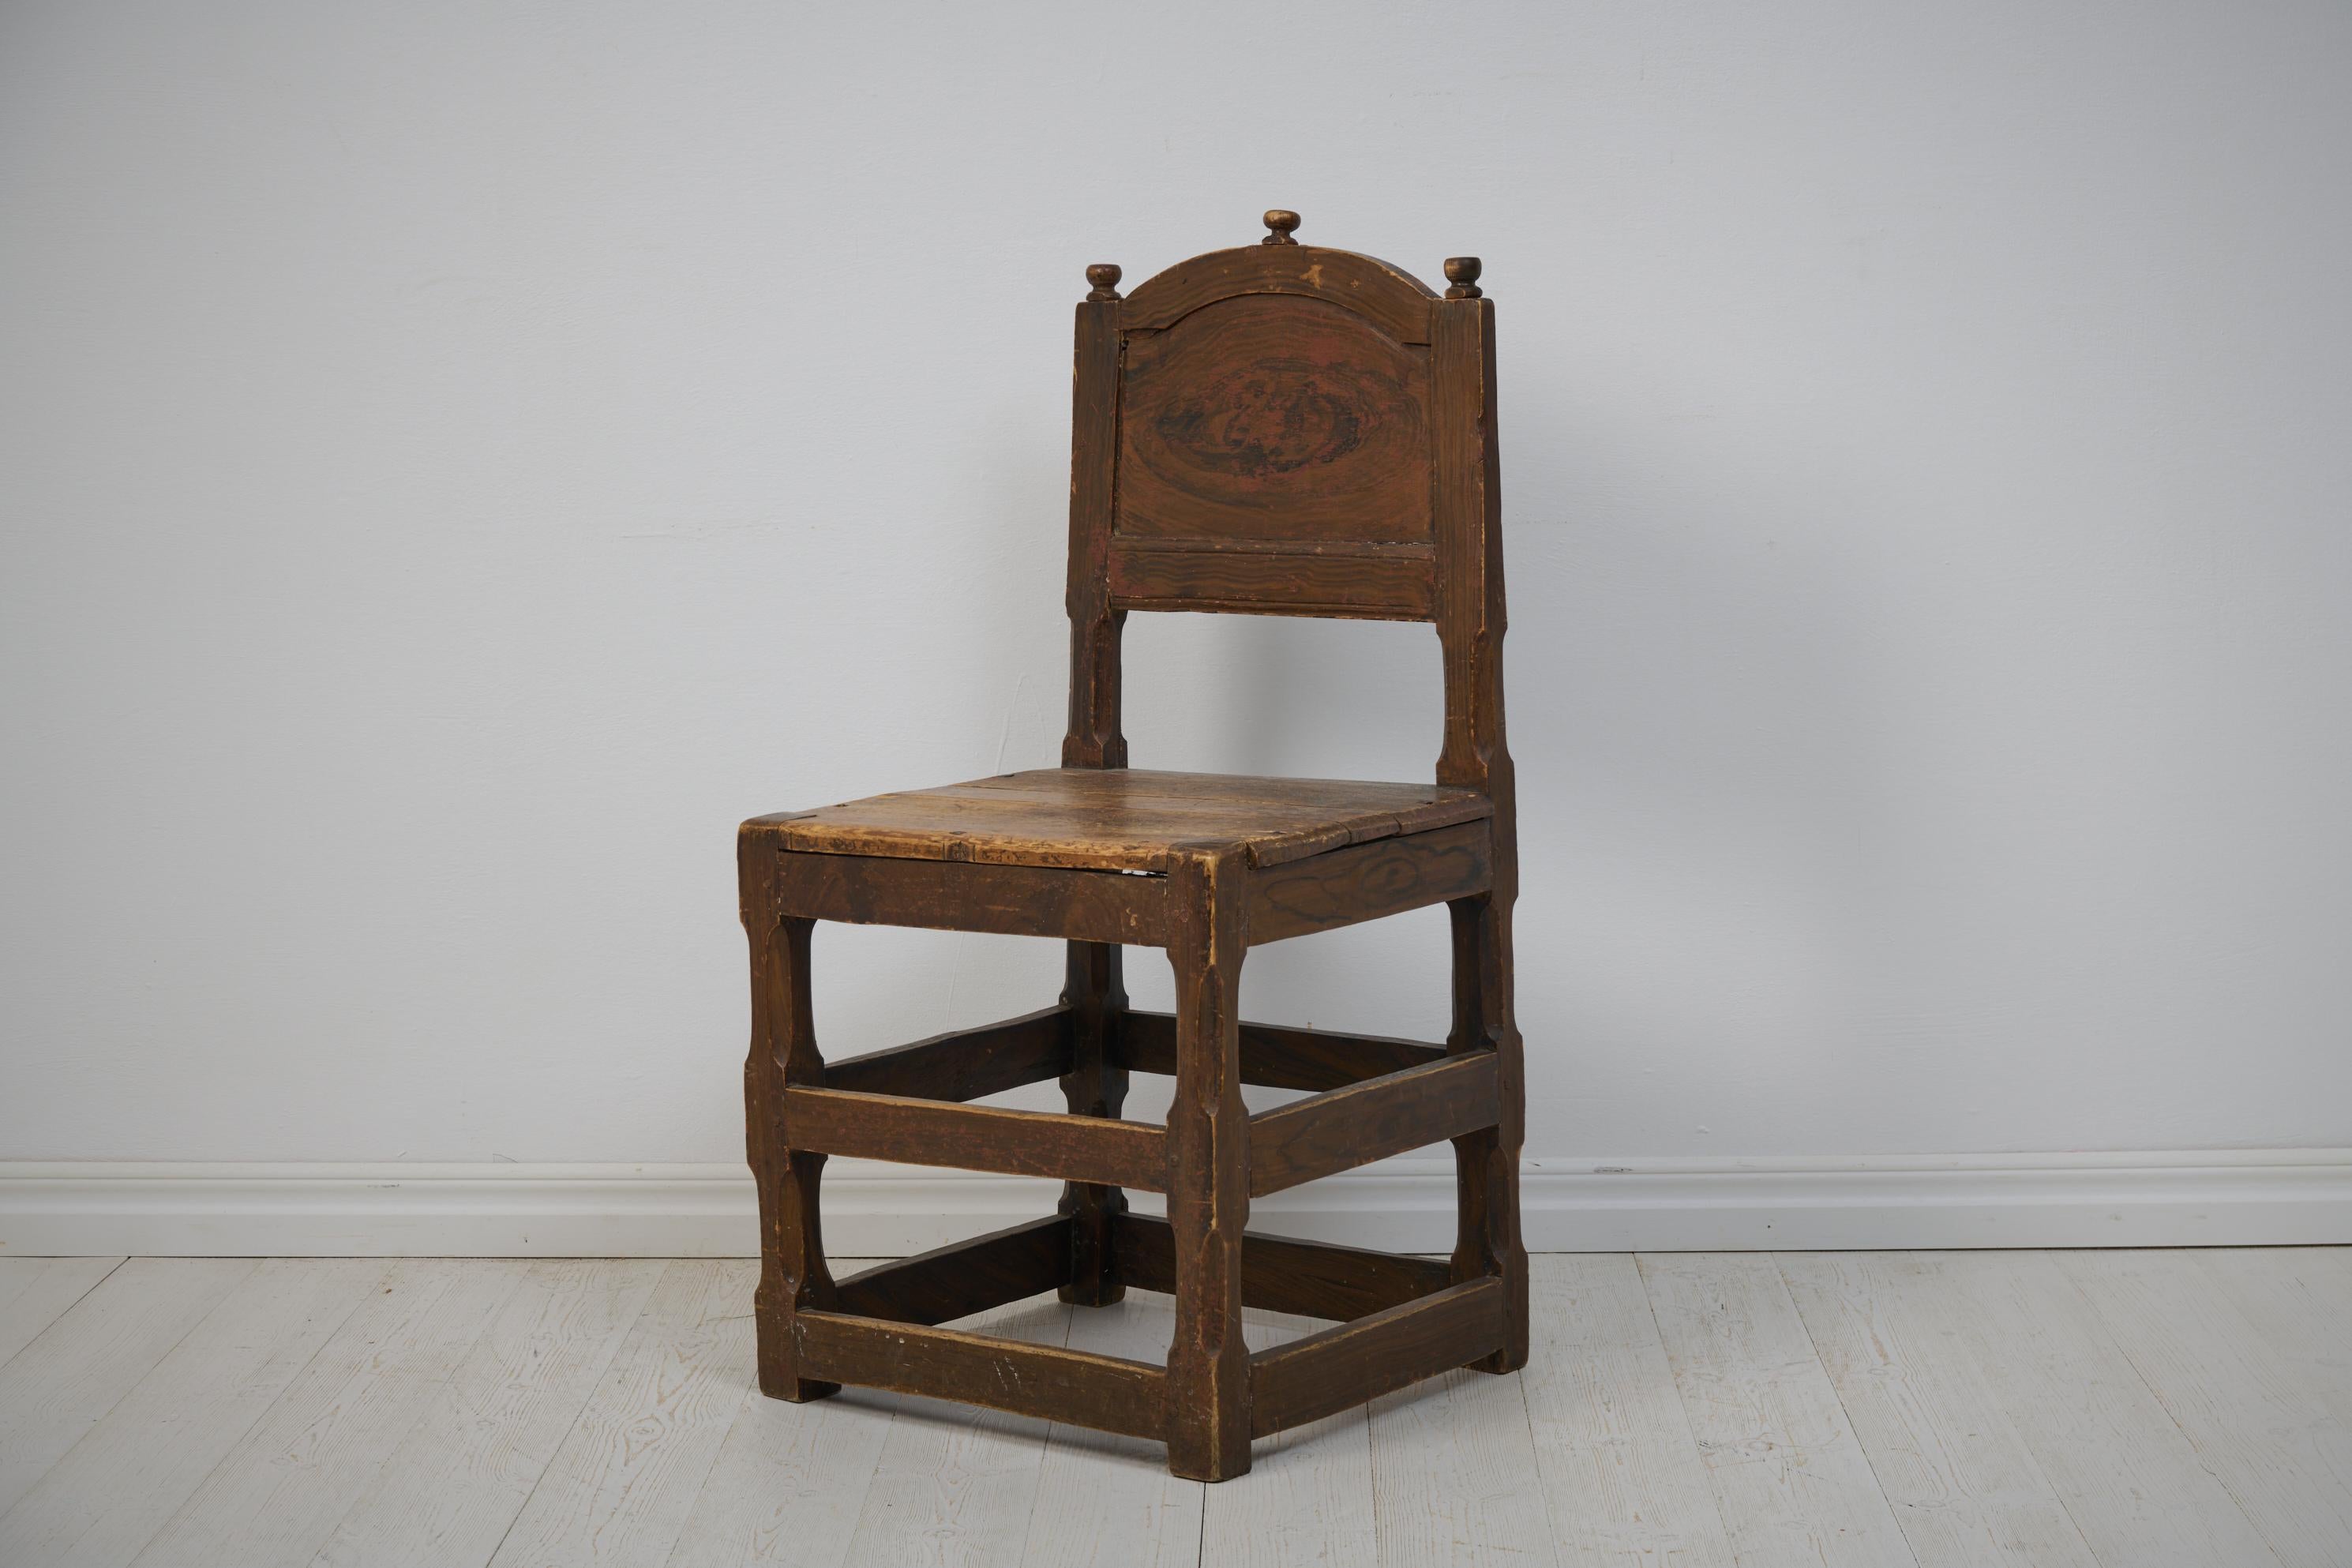 Chaise baroque suédoise d'une taille inhabituelle, fabriquée vers 1770. La chaise a un cadre en pin massif avec une fausse peinture d'origine. Le peintre a fait une interprétation libre du noyer. La peinture est abîmée par l'usage. La chaise est